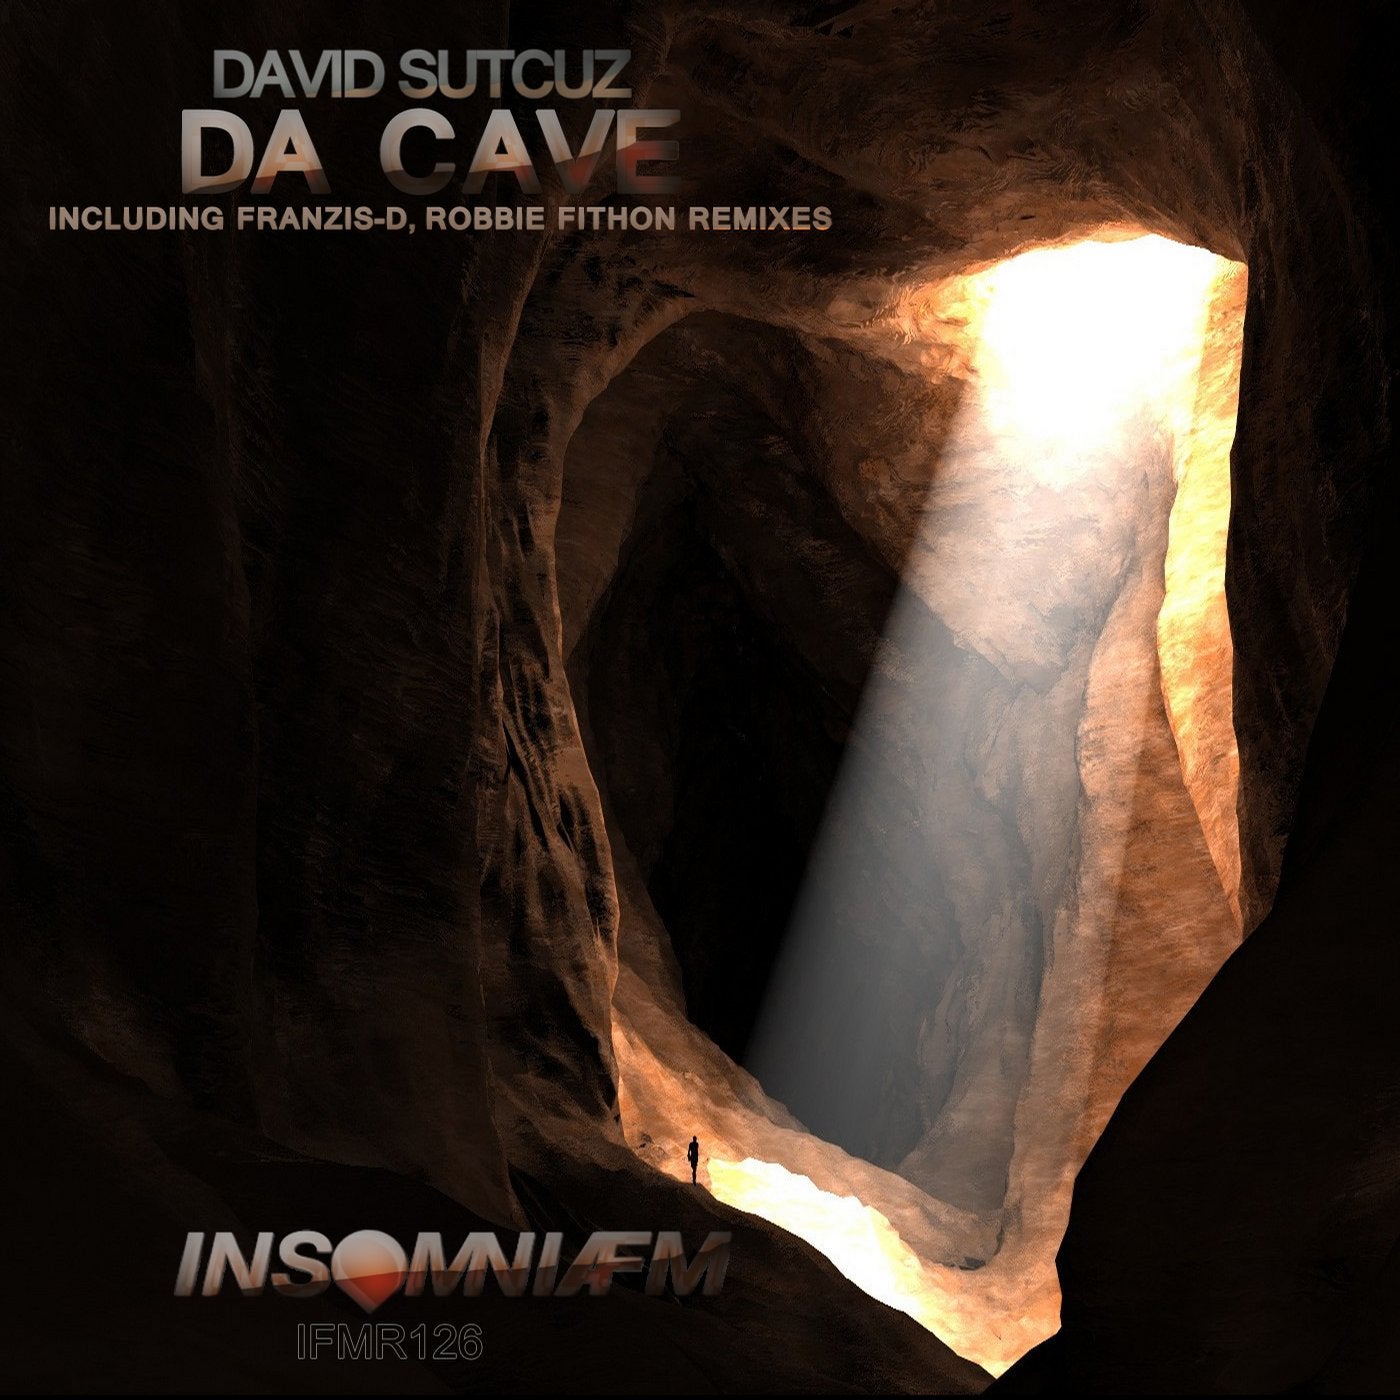 Da Cave